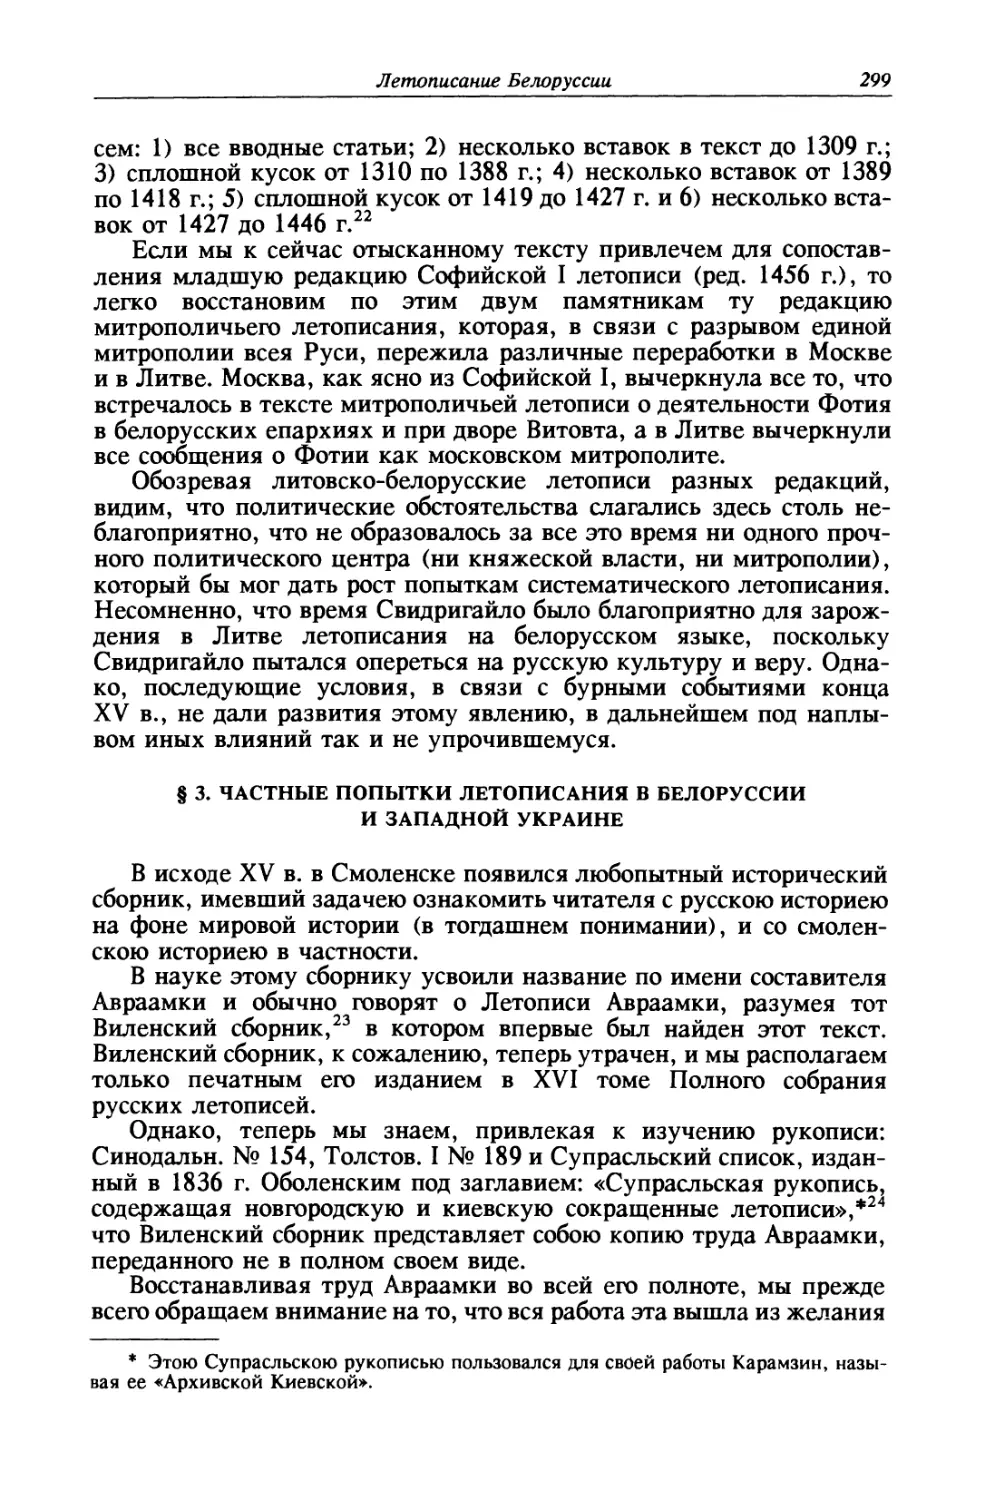 § 3. Частные попытки летописания в Белоруссии и Западной Украине